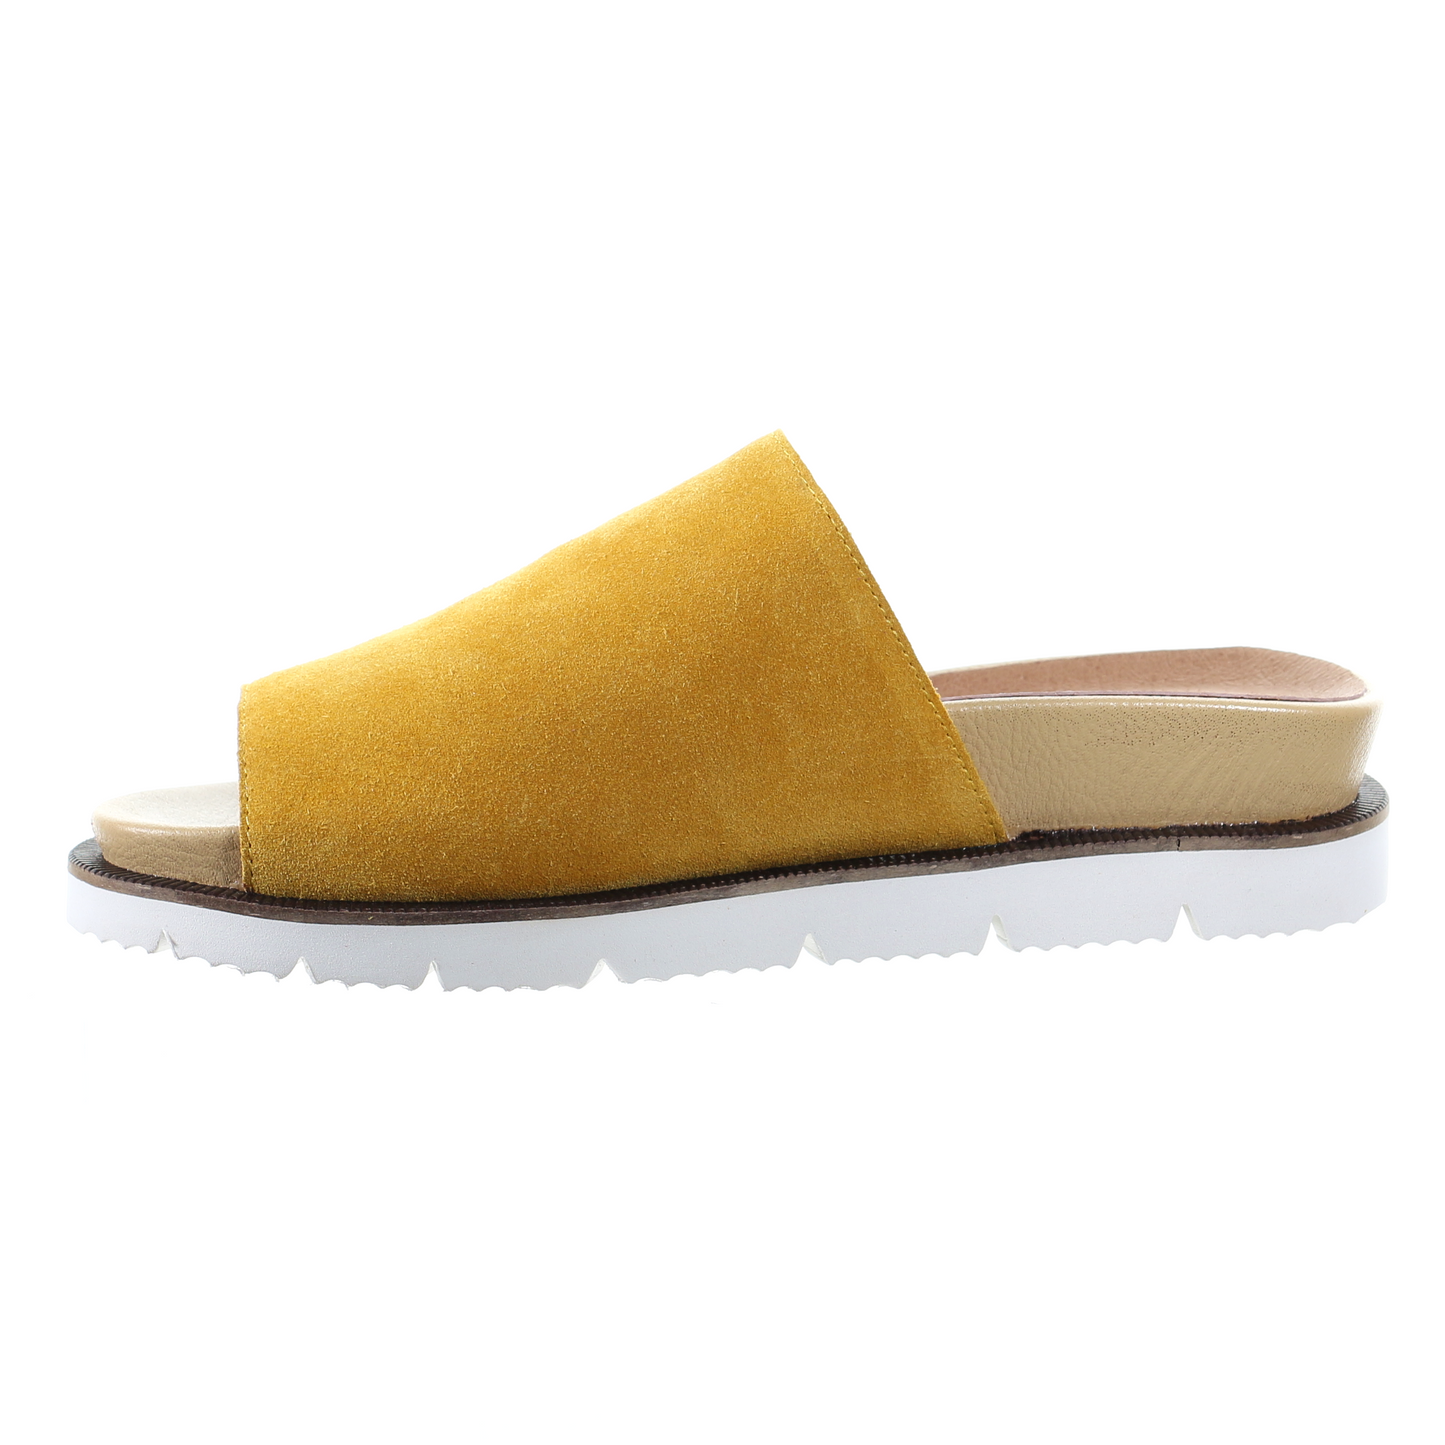 Suede comfort slipper